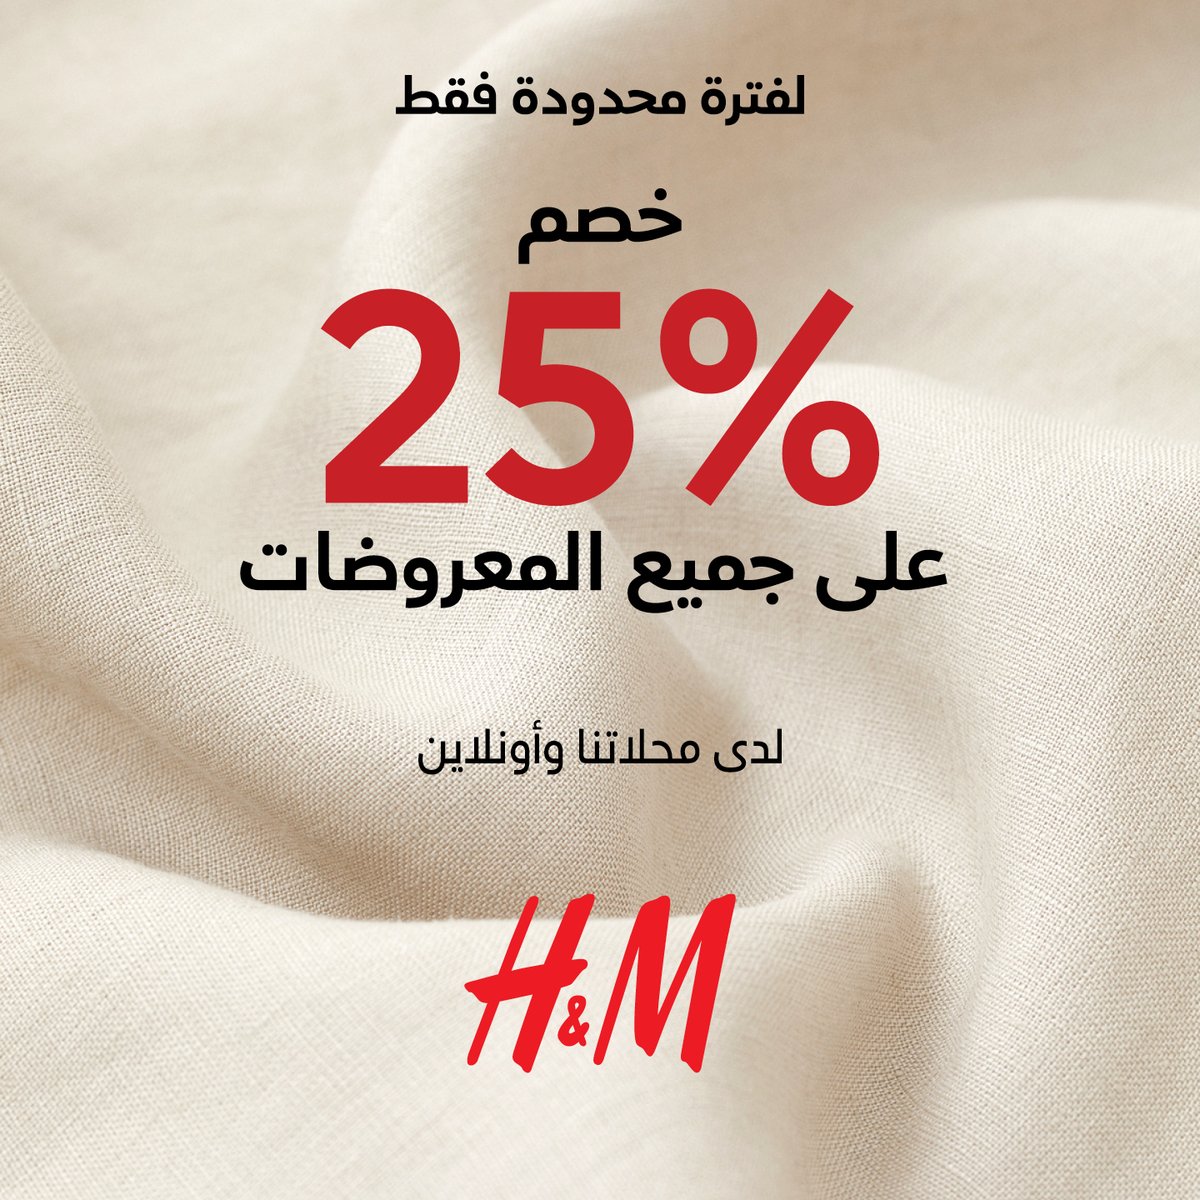 خصم %25 على كل شيء! احتفلوا معنا! تسوقوا للنساء وللرجال وللأطفال ومستلزمات المنزل! يسري العرض في محلاتنا وأونلاين لغاية 26 فبراير. #روشان_مول #مولات_كنان #السعودية #تسوق #مول #اتش_اند_ام #RoshanMall #KinanMalls #SaudiArabia #Shopping #HM